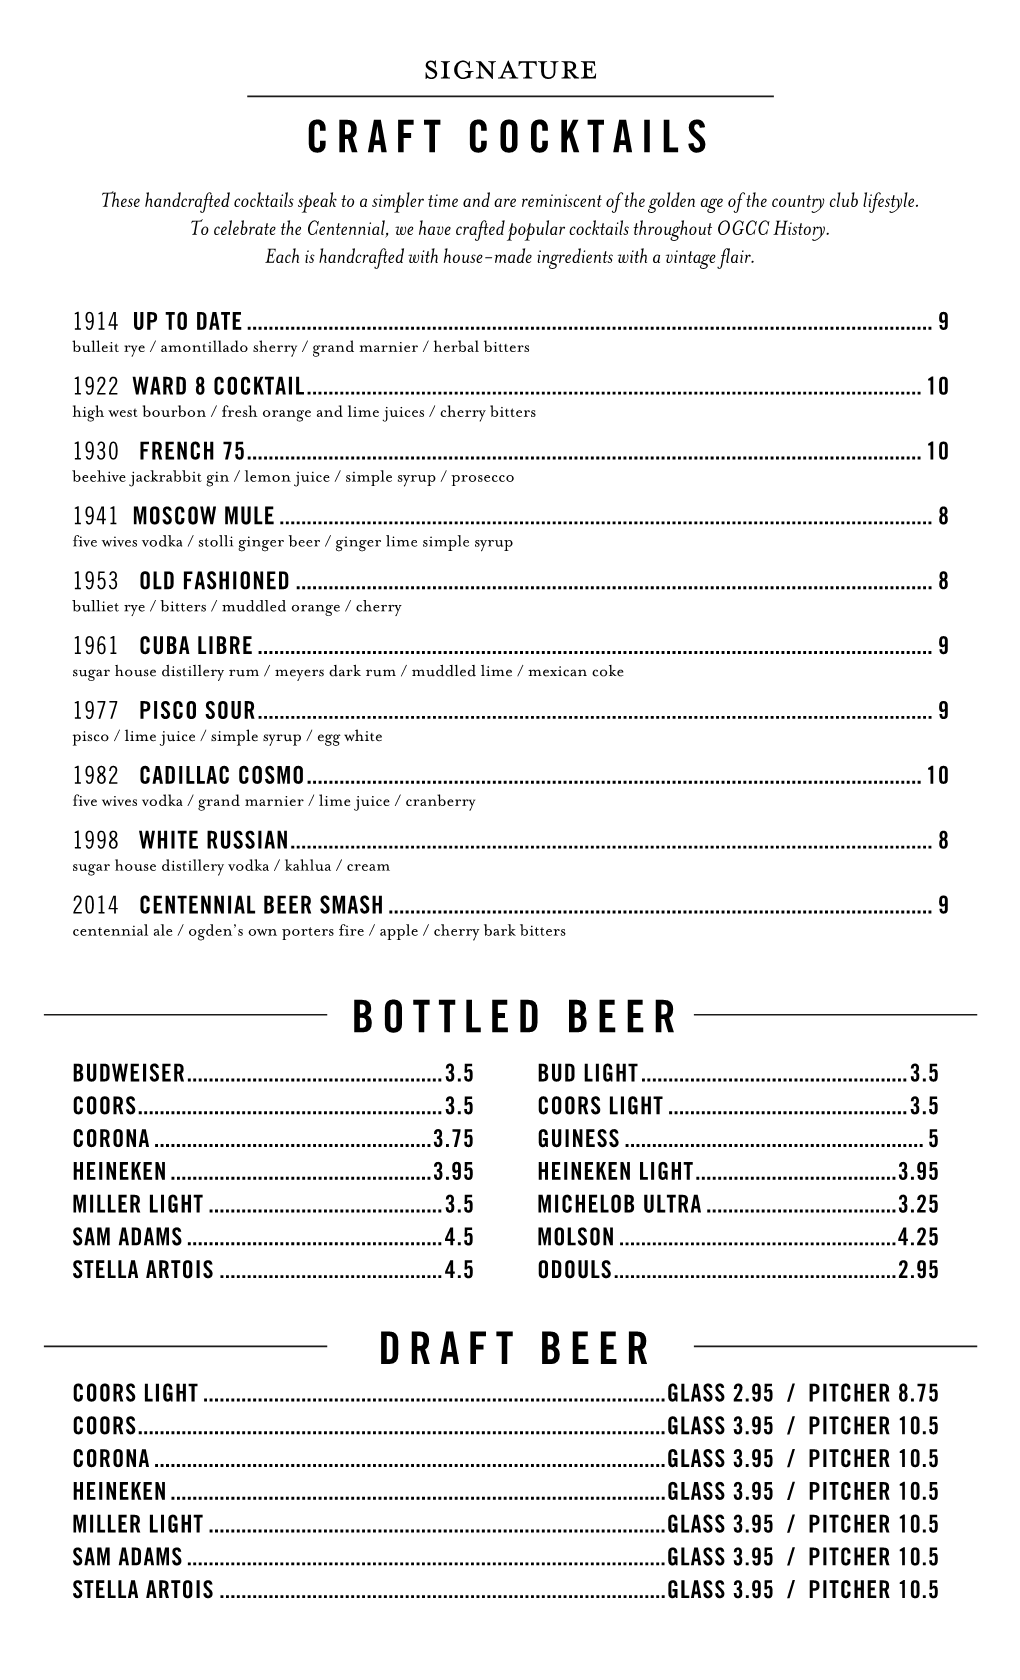 Craft Cocktails Bottled Beer Draft Beer